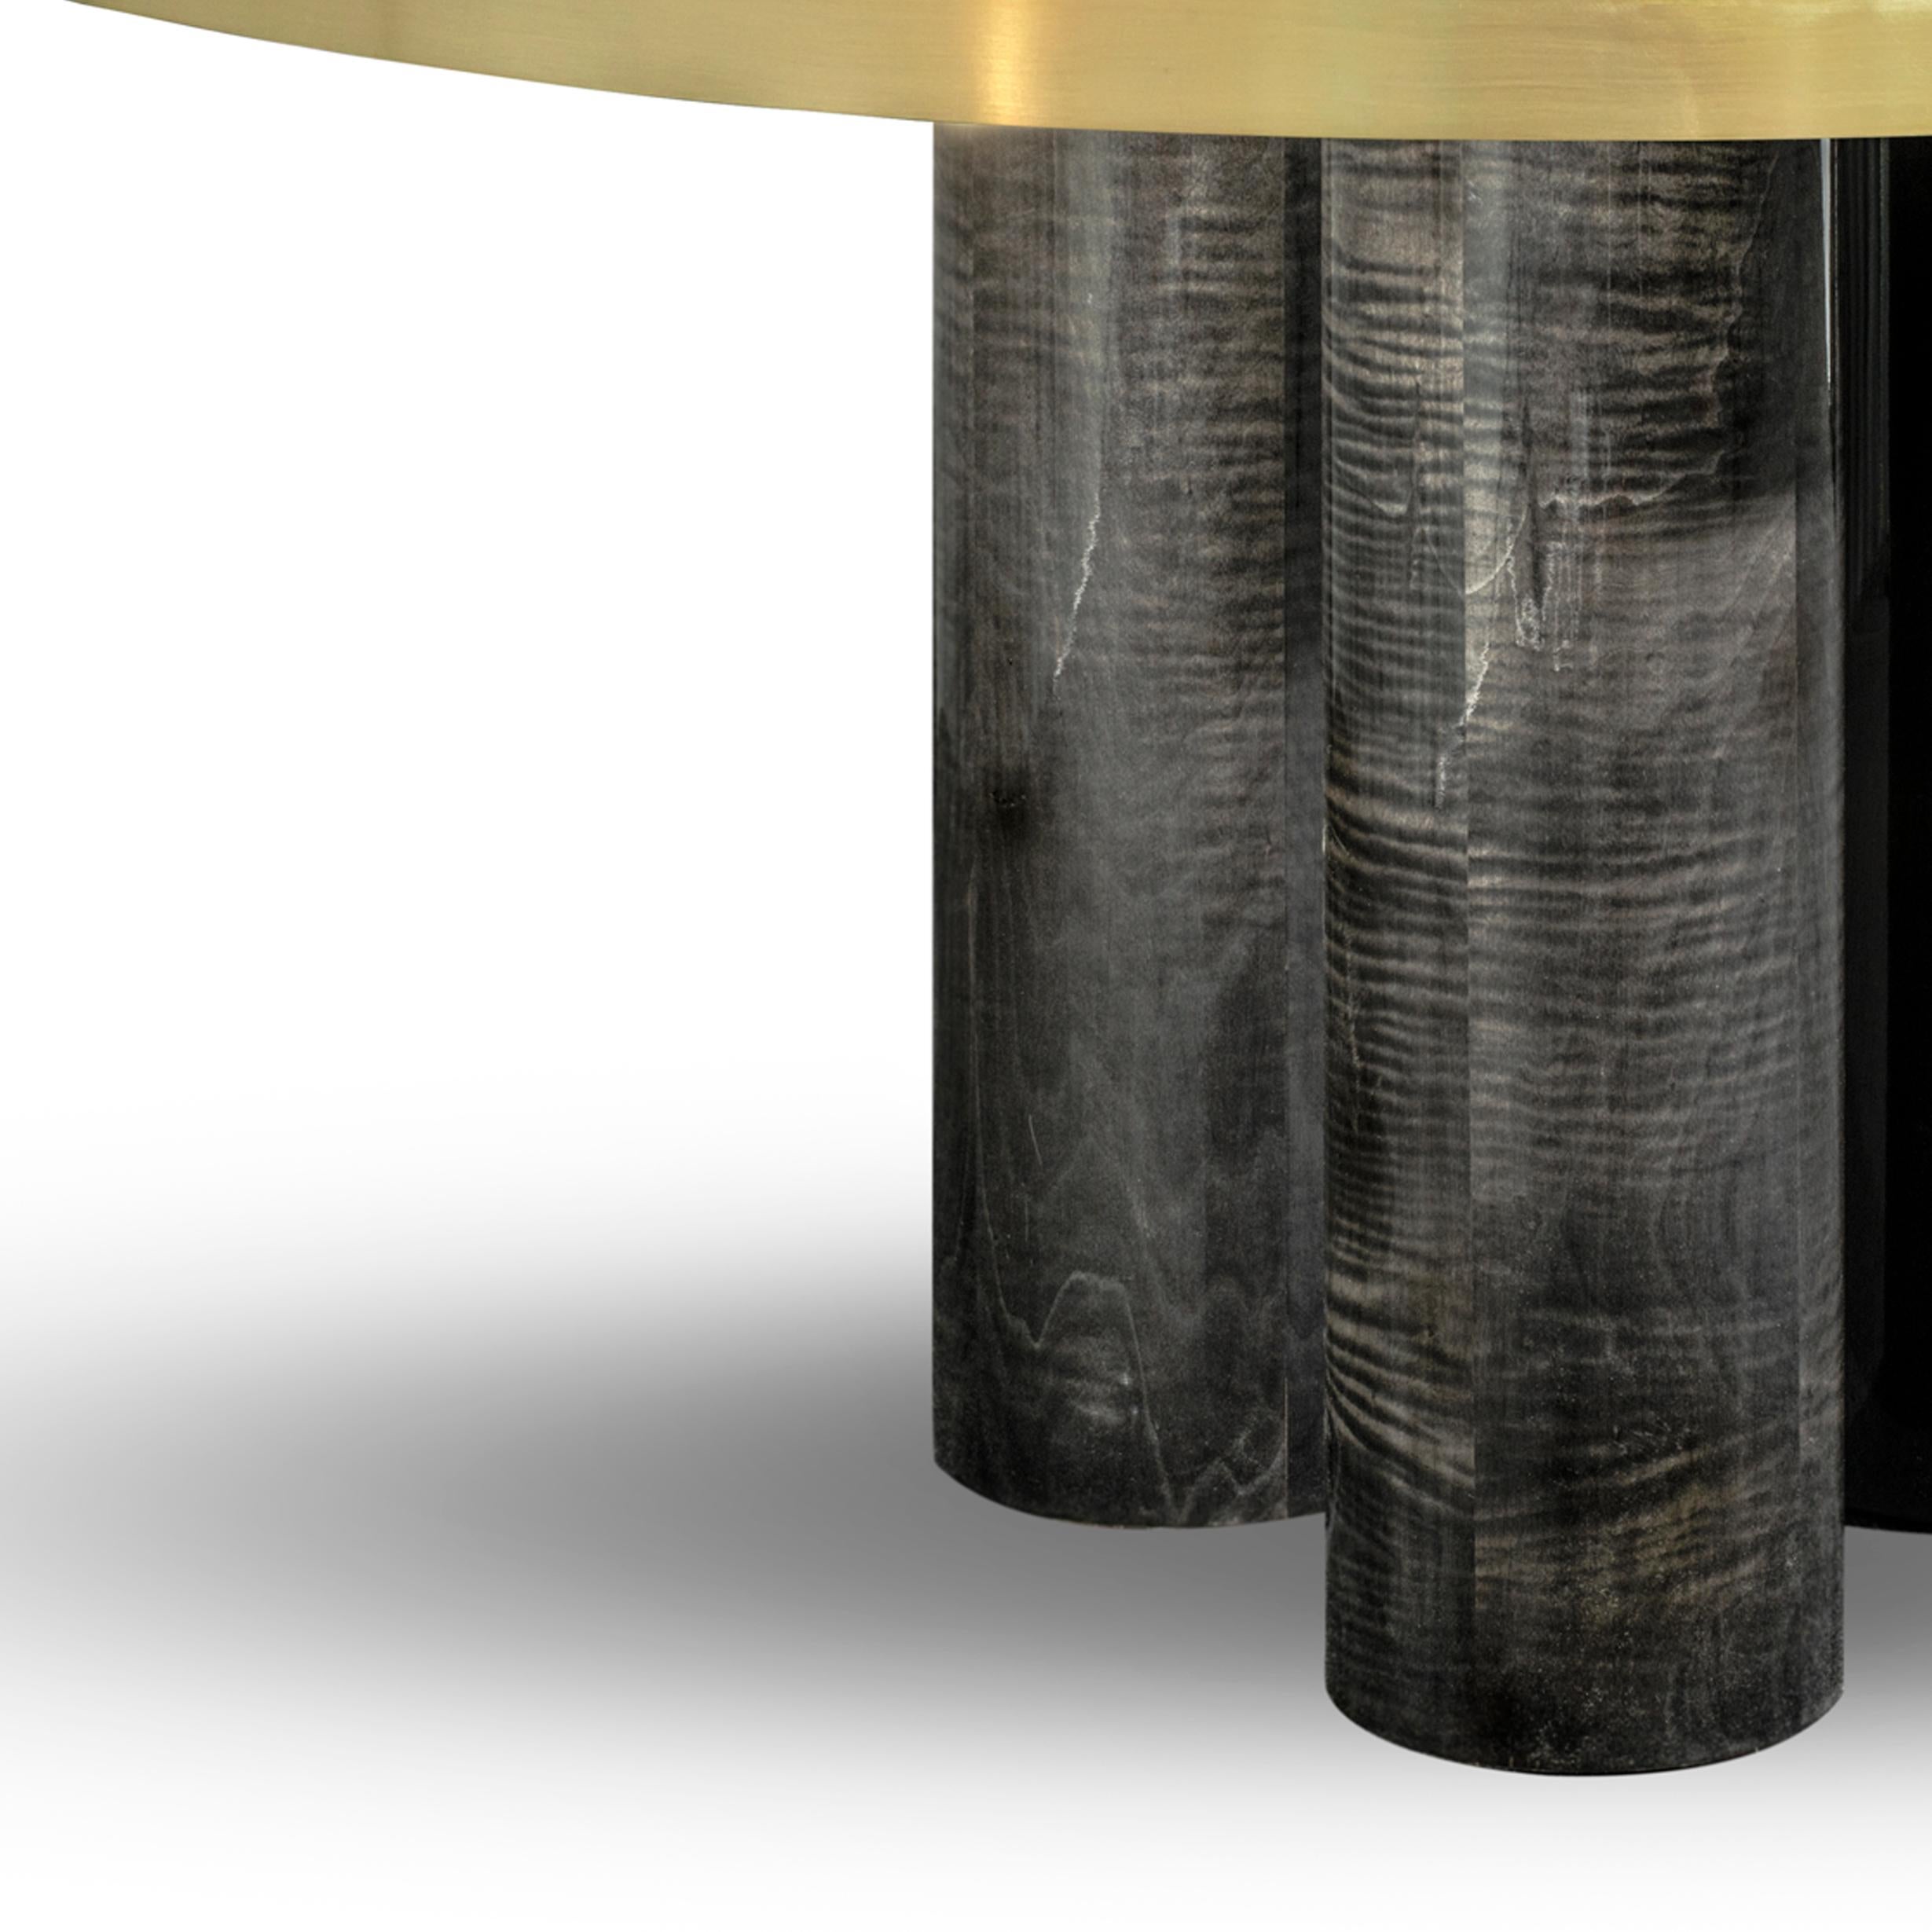 Ovaler Esstisch Ray, Hochglanz Frisé Grau Sikomoro Wood von Duistt

Im Gegensatz zu seinem ursprünglichen Entwurf präsentiert sich der Esstisch Ray Oval mit einer robusteren Figur. Die zarten Linien aus gebürstetem Messing definieren und verleihen